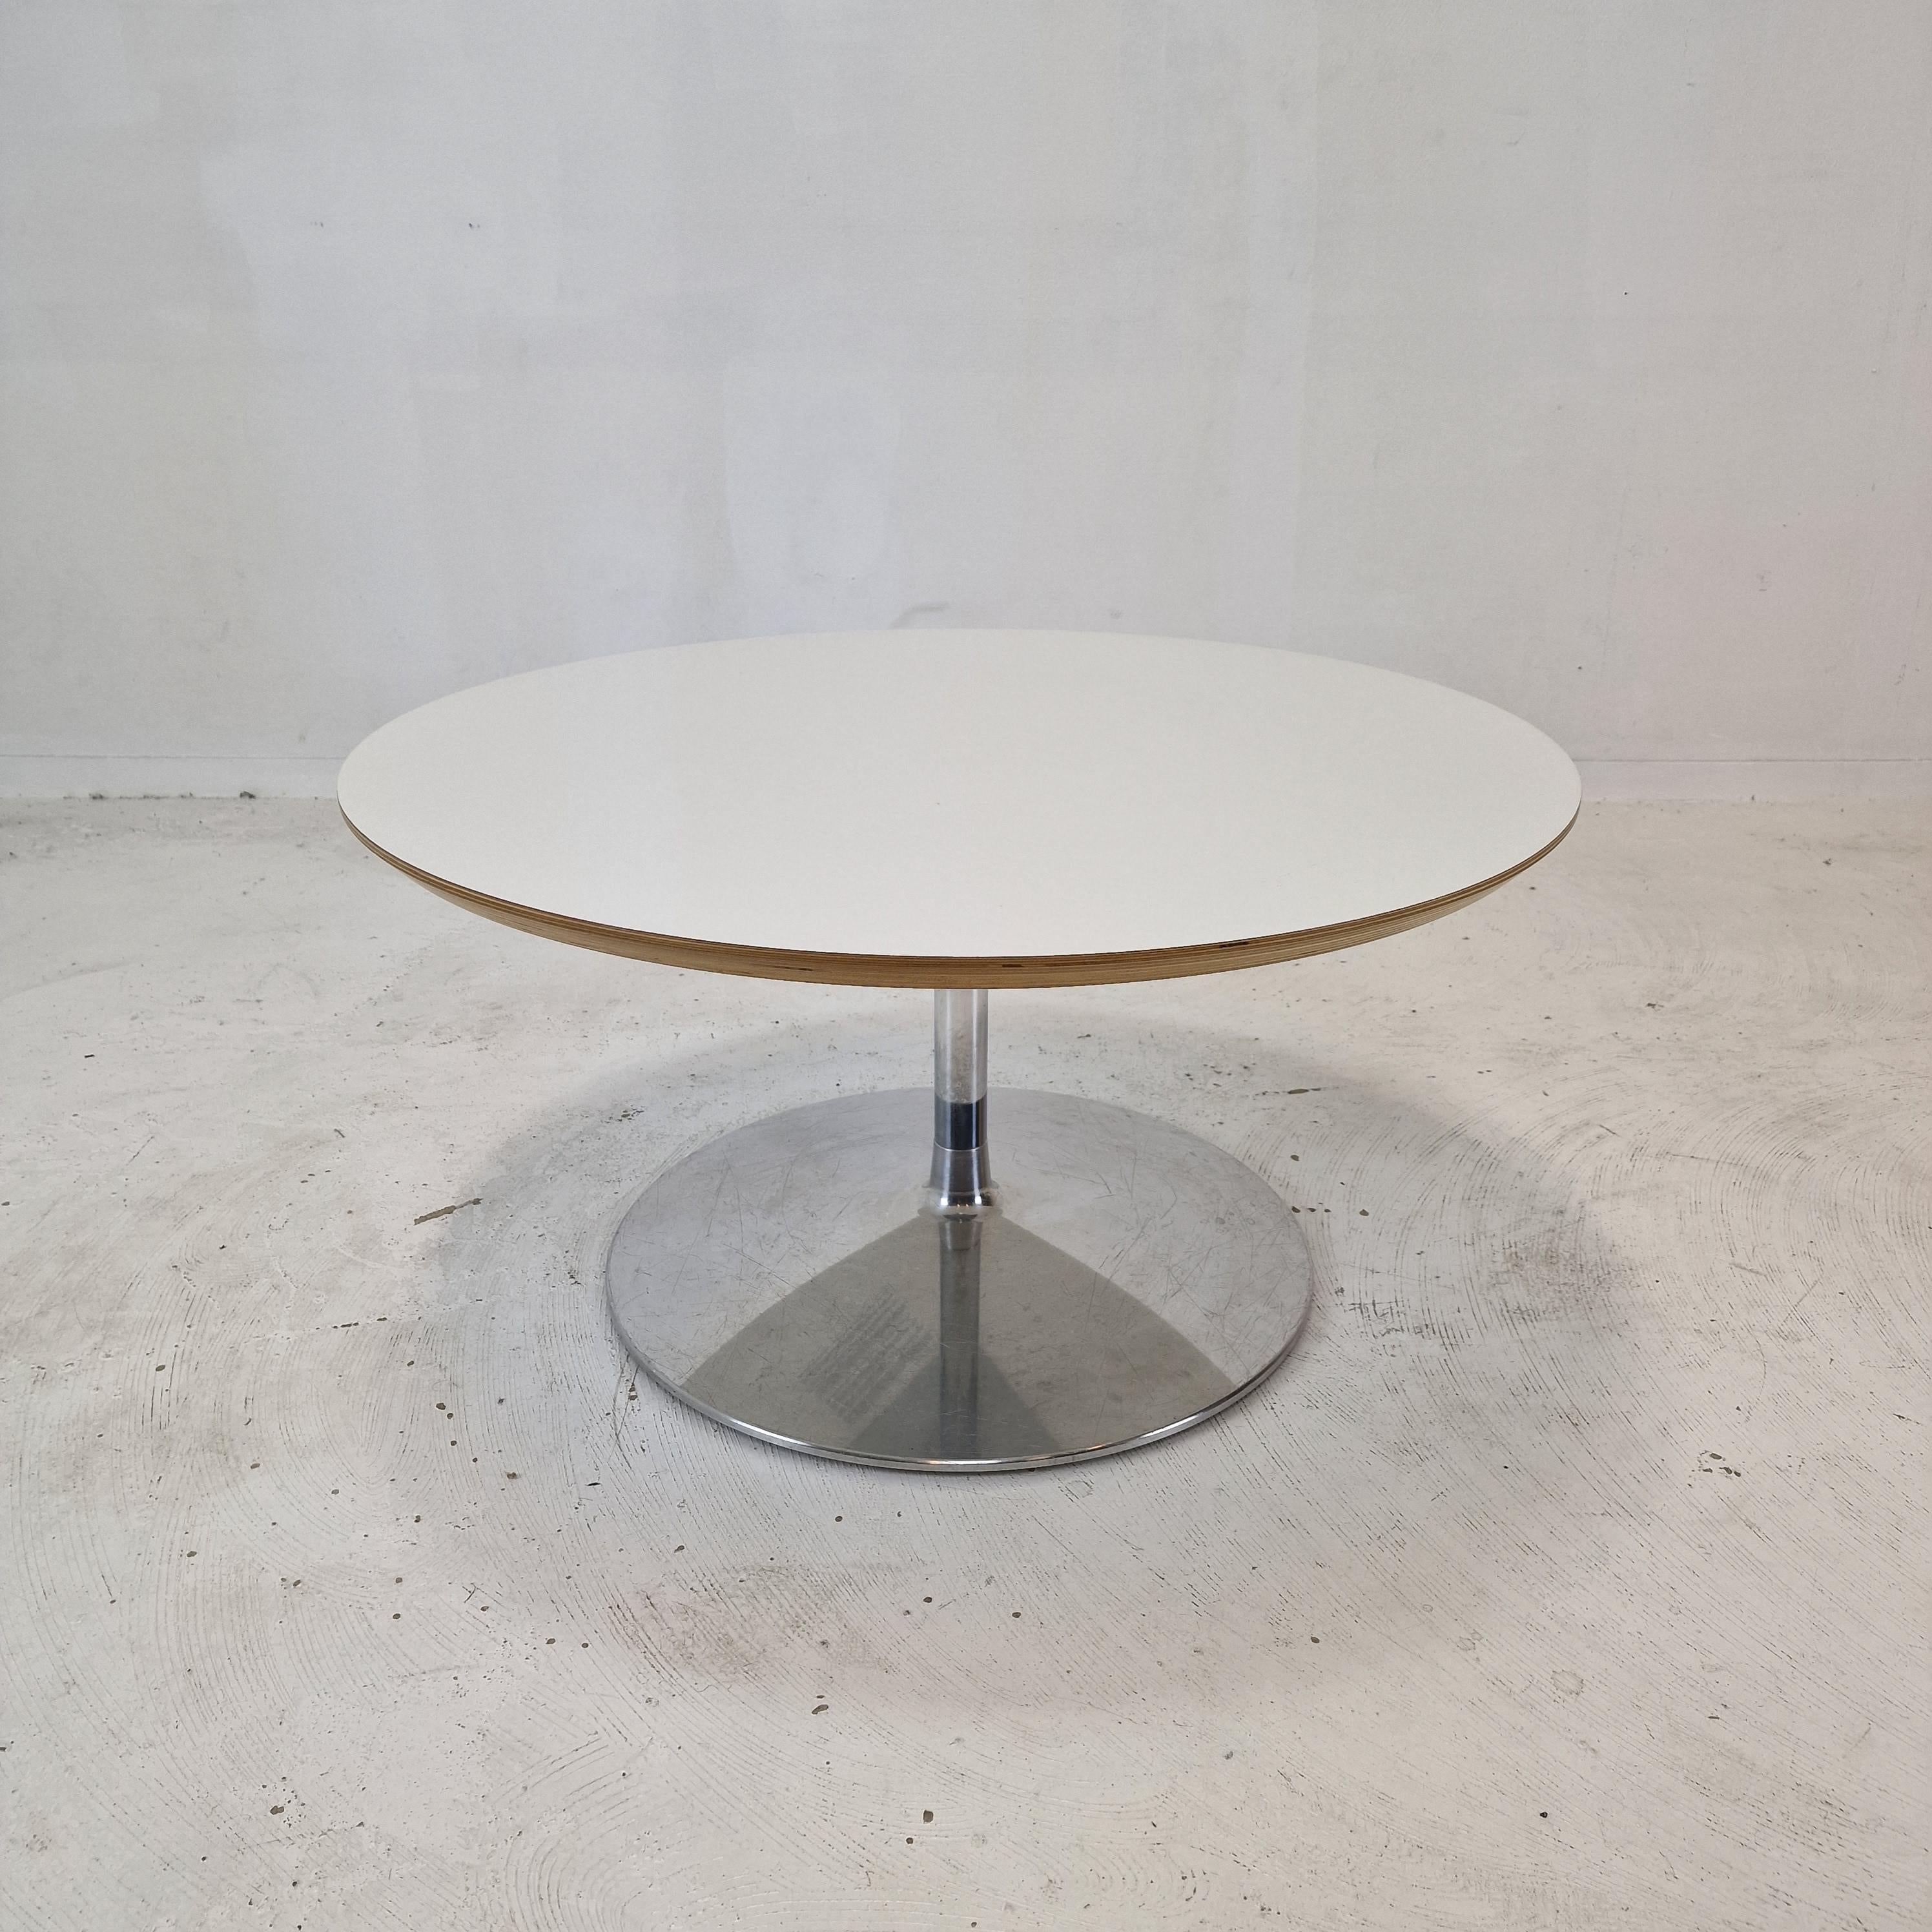 Très belle table basse ronde, conçue par Pierre Paulin dans les années 1960. 
Cette table particulière a été fabriquée vers 2000.

Le nom de la table est 